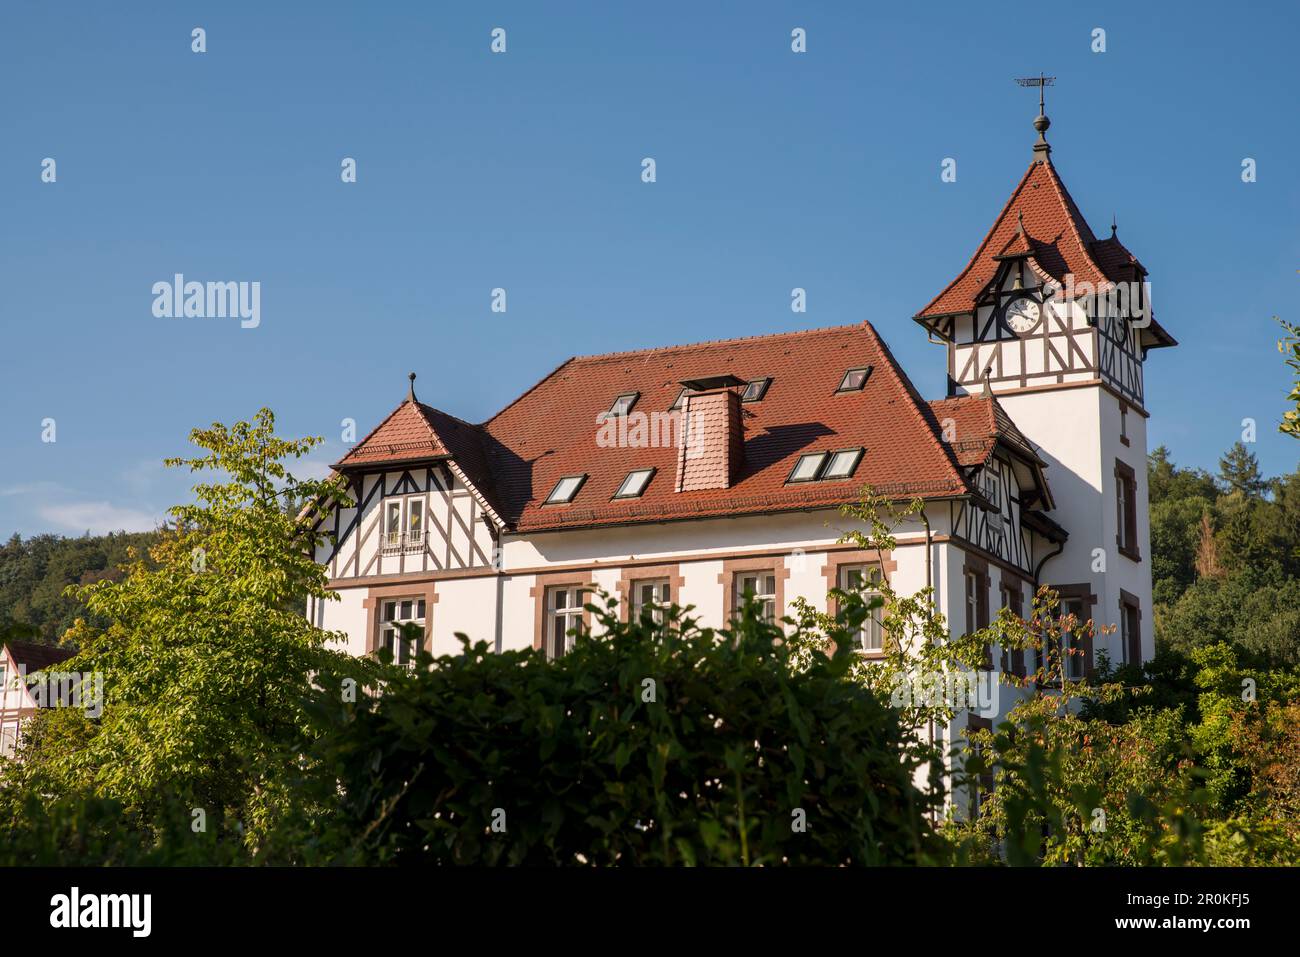 Maison historique à colombages à la Saline avec tour d'horloge, Bad Karlshafen, Hesse, Allemagne, Europe Banque D'Images